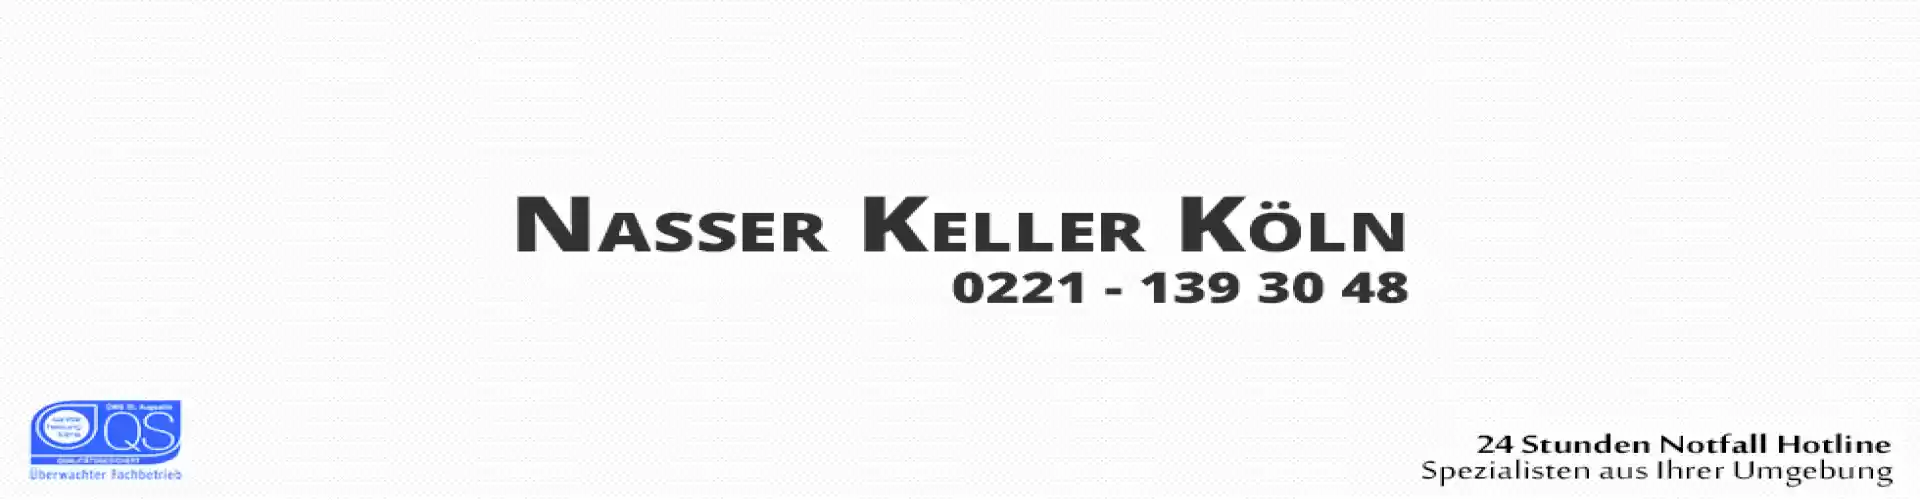 Nasser Keller Köln